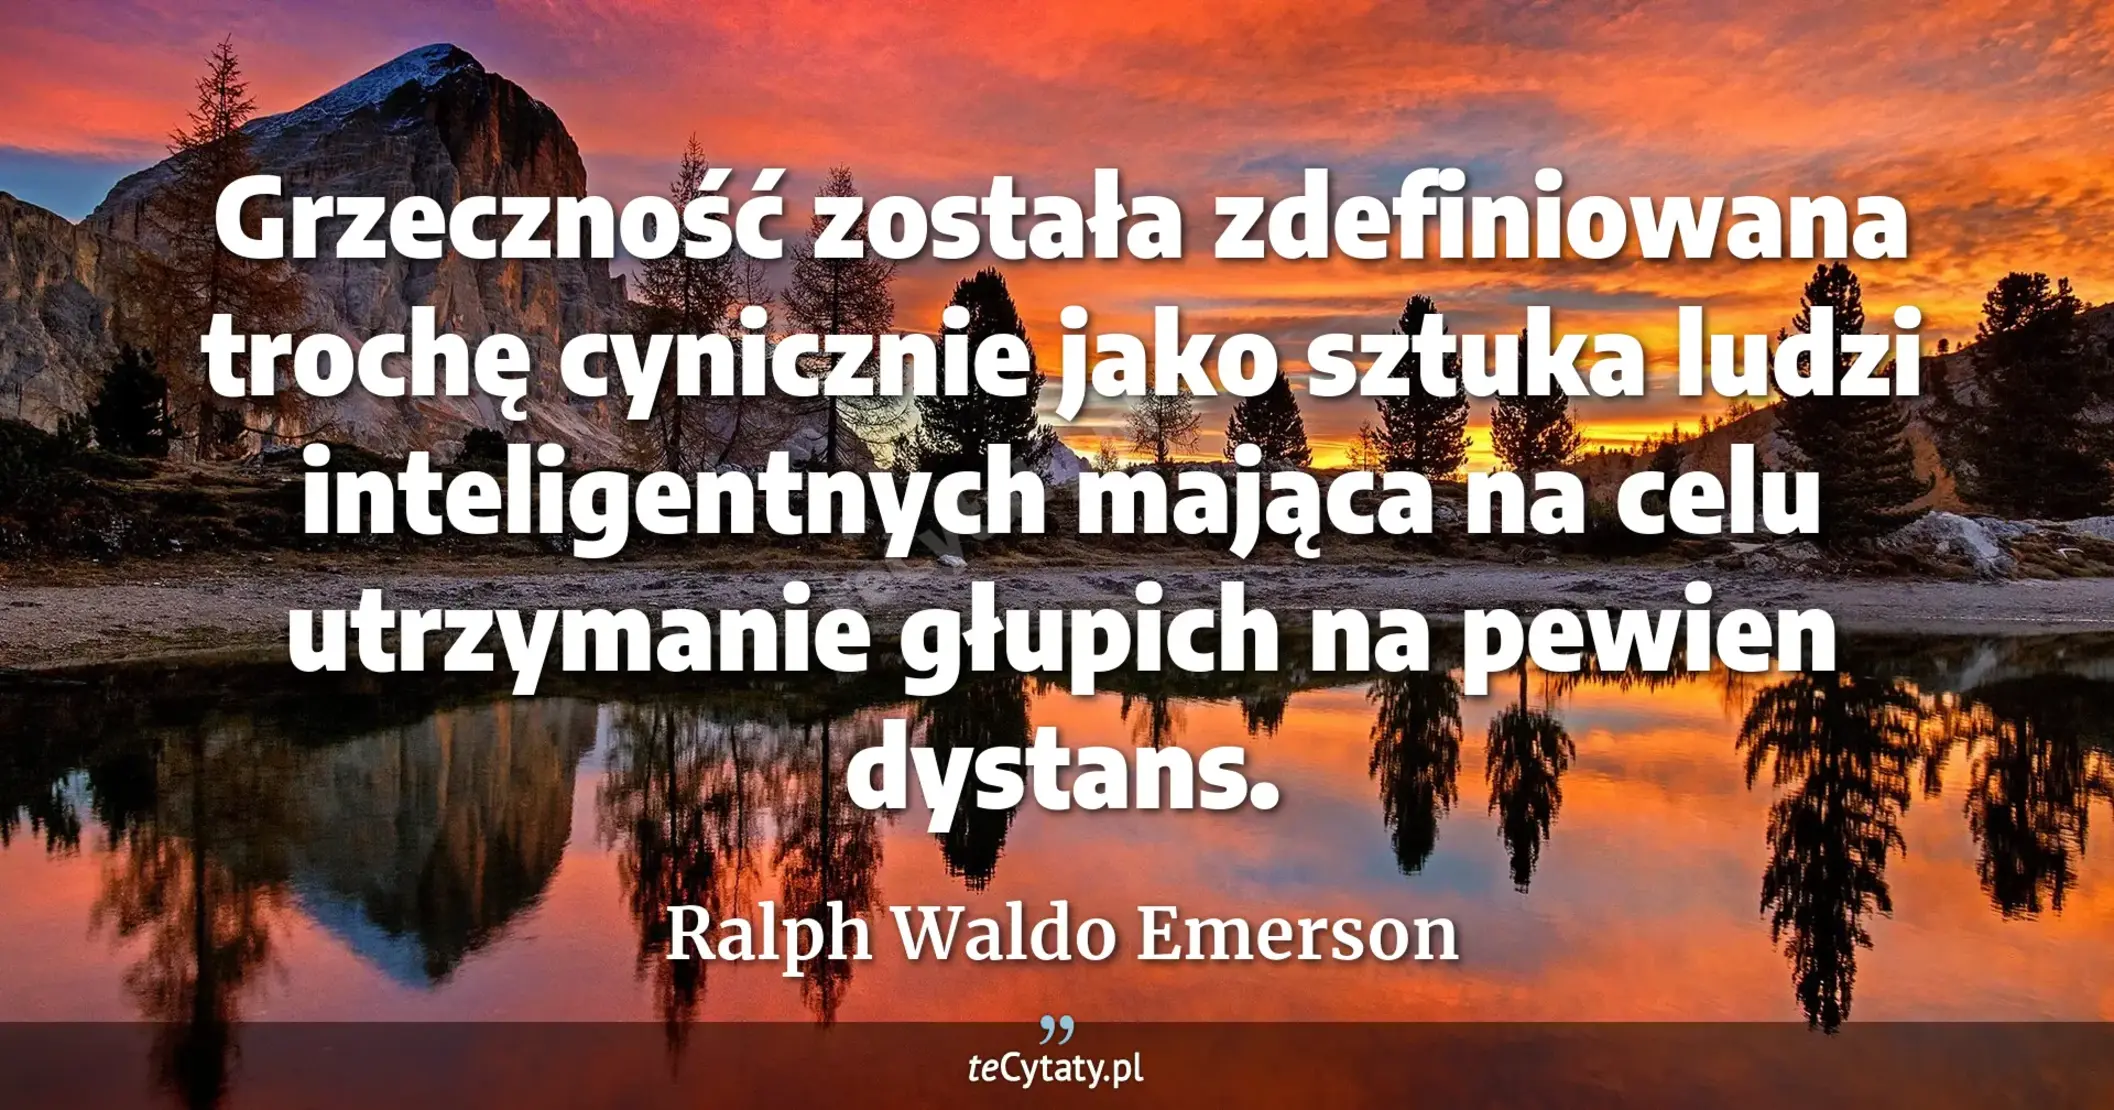 Grzeczność została zdefiniowana trochę cynicznie jako sztuka ludzi inteligentnych mająca na celu utrzymanie głupich na pewien dystans. - Ralph Waldo Emerson